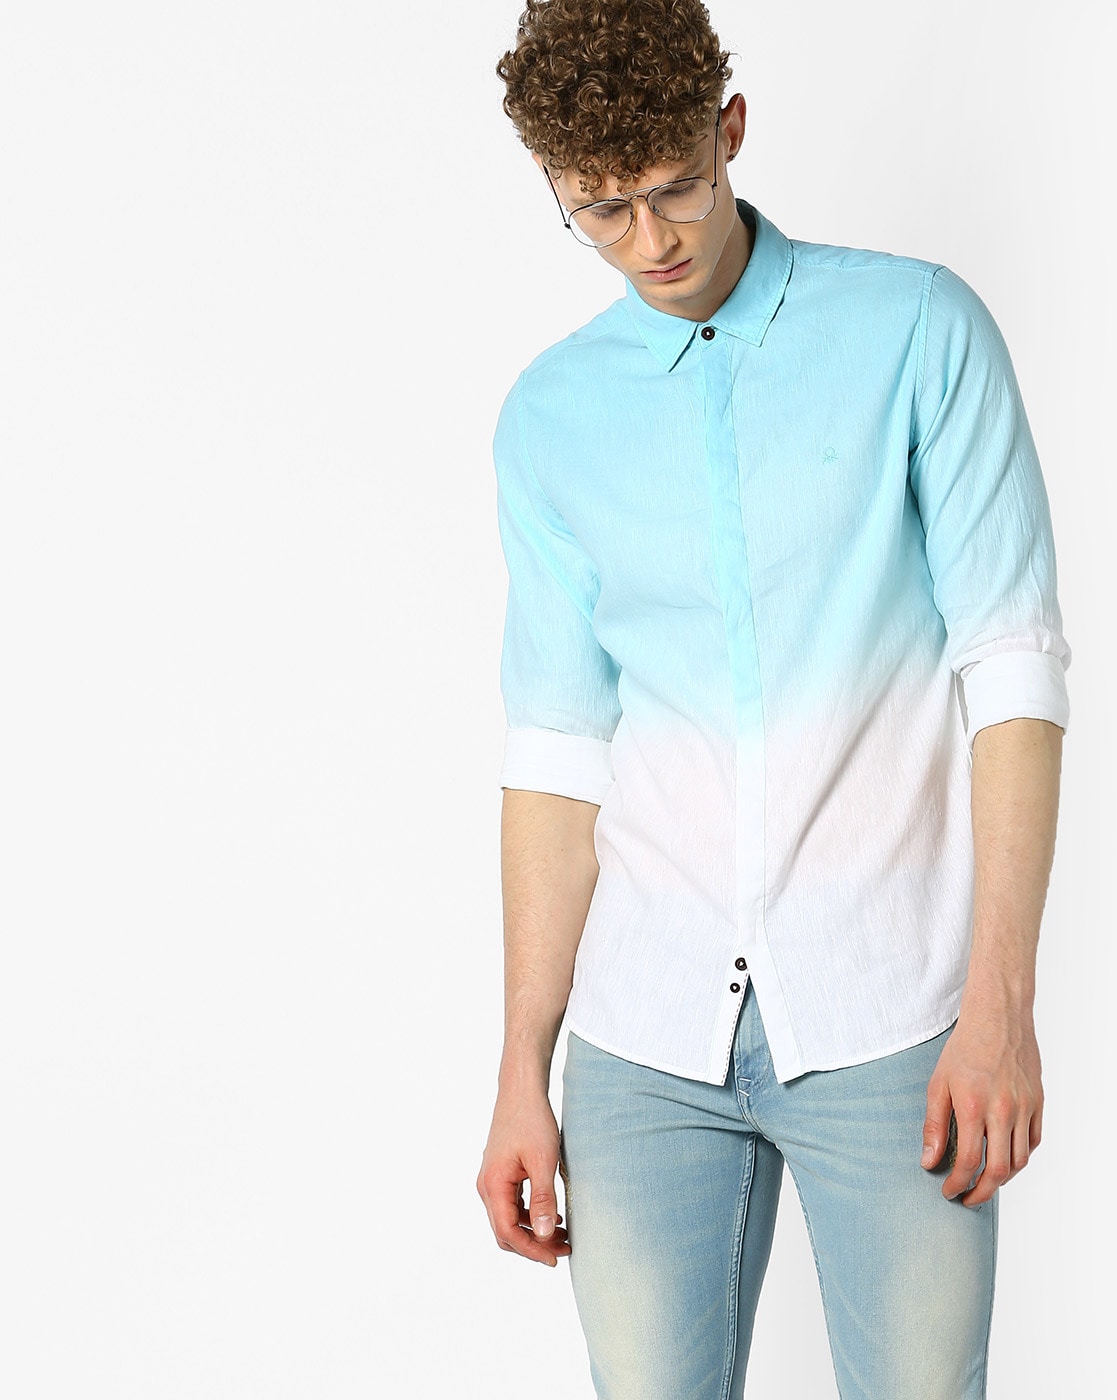 Buy > white colour shirt for men > in stock